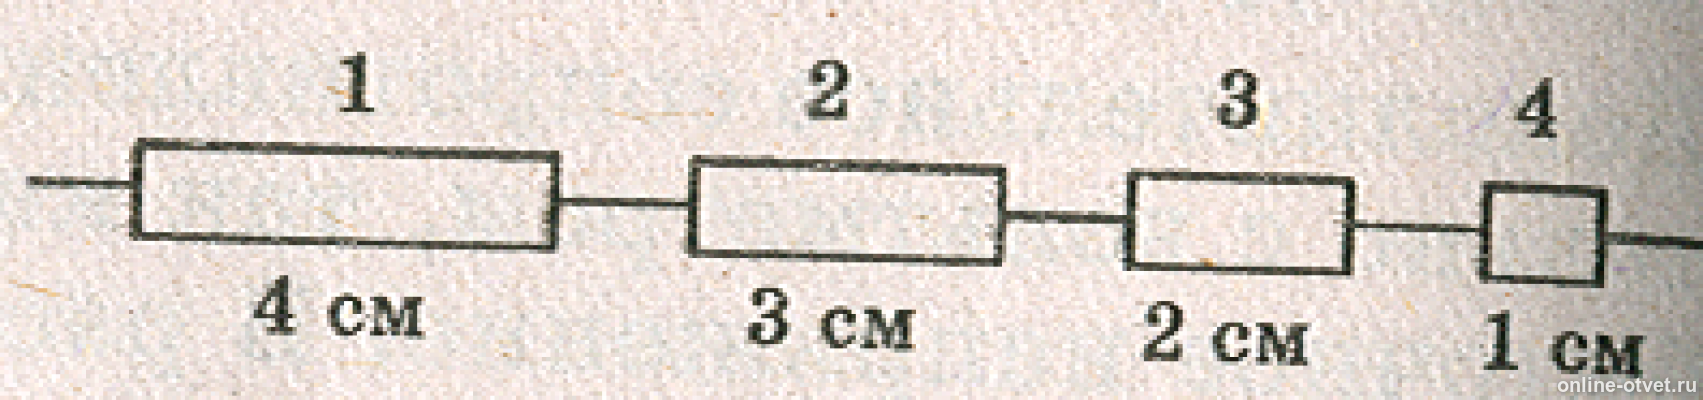 Цепочка состоит из одинаковых. Три проводки одинаковой длины и поперечного сечения. Электрическая цепь из разных сечений проводов. Электрическая цепь состоит из одинаковых провод. Проводники разной длины.